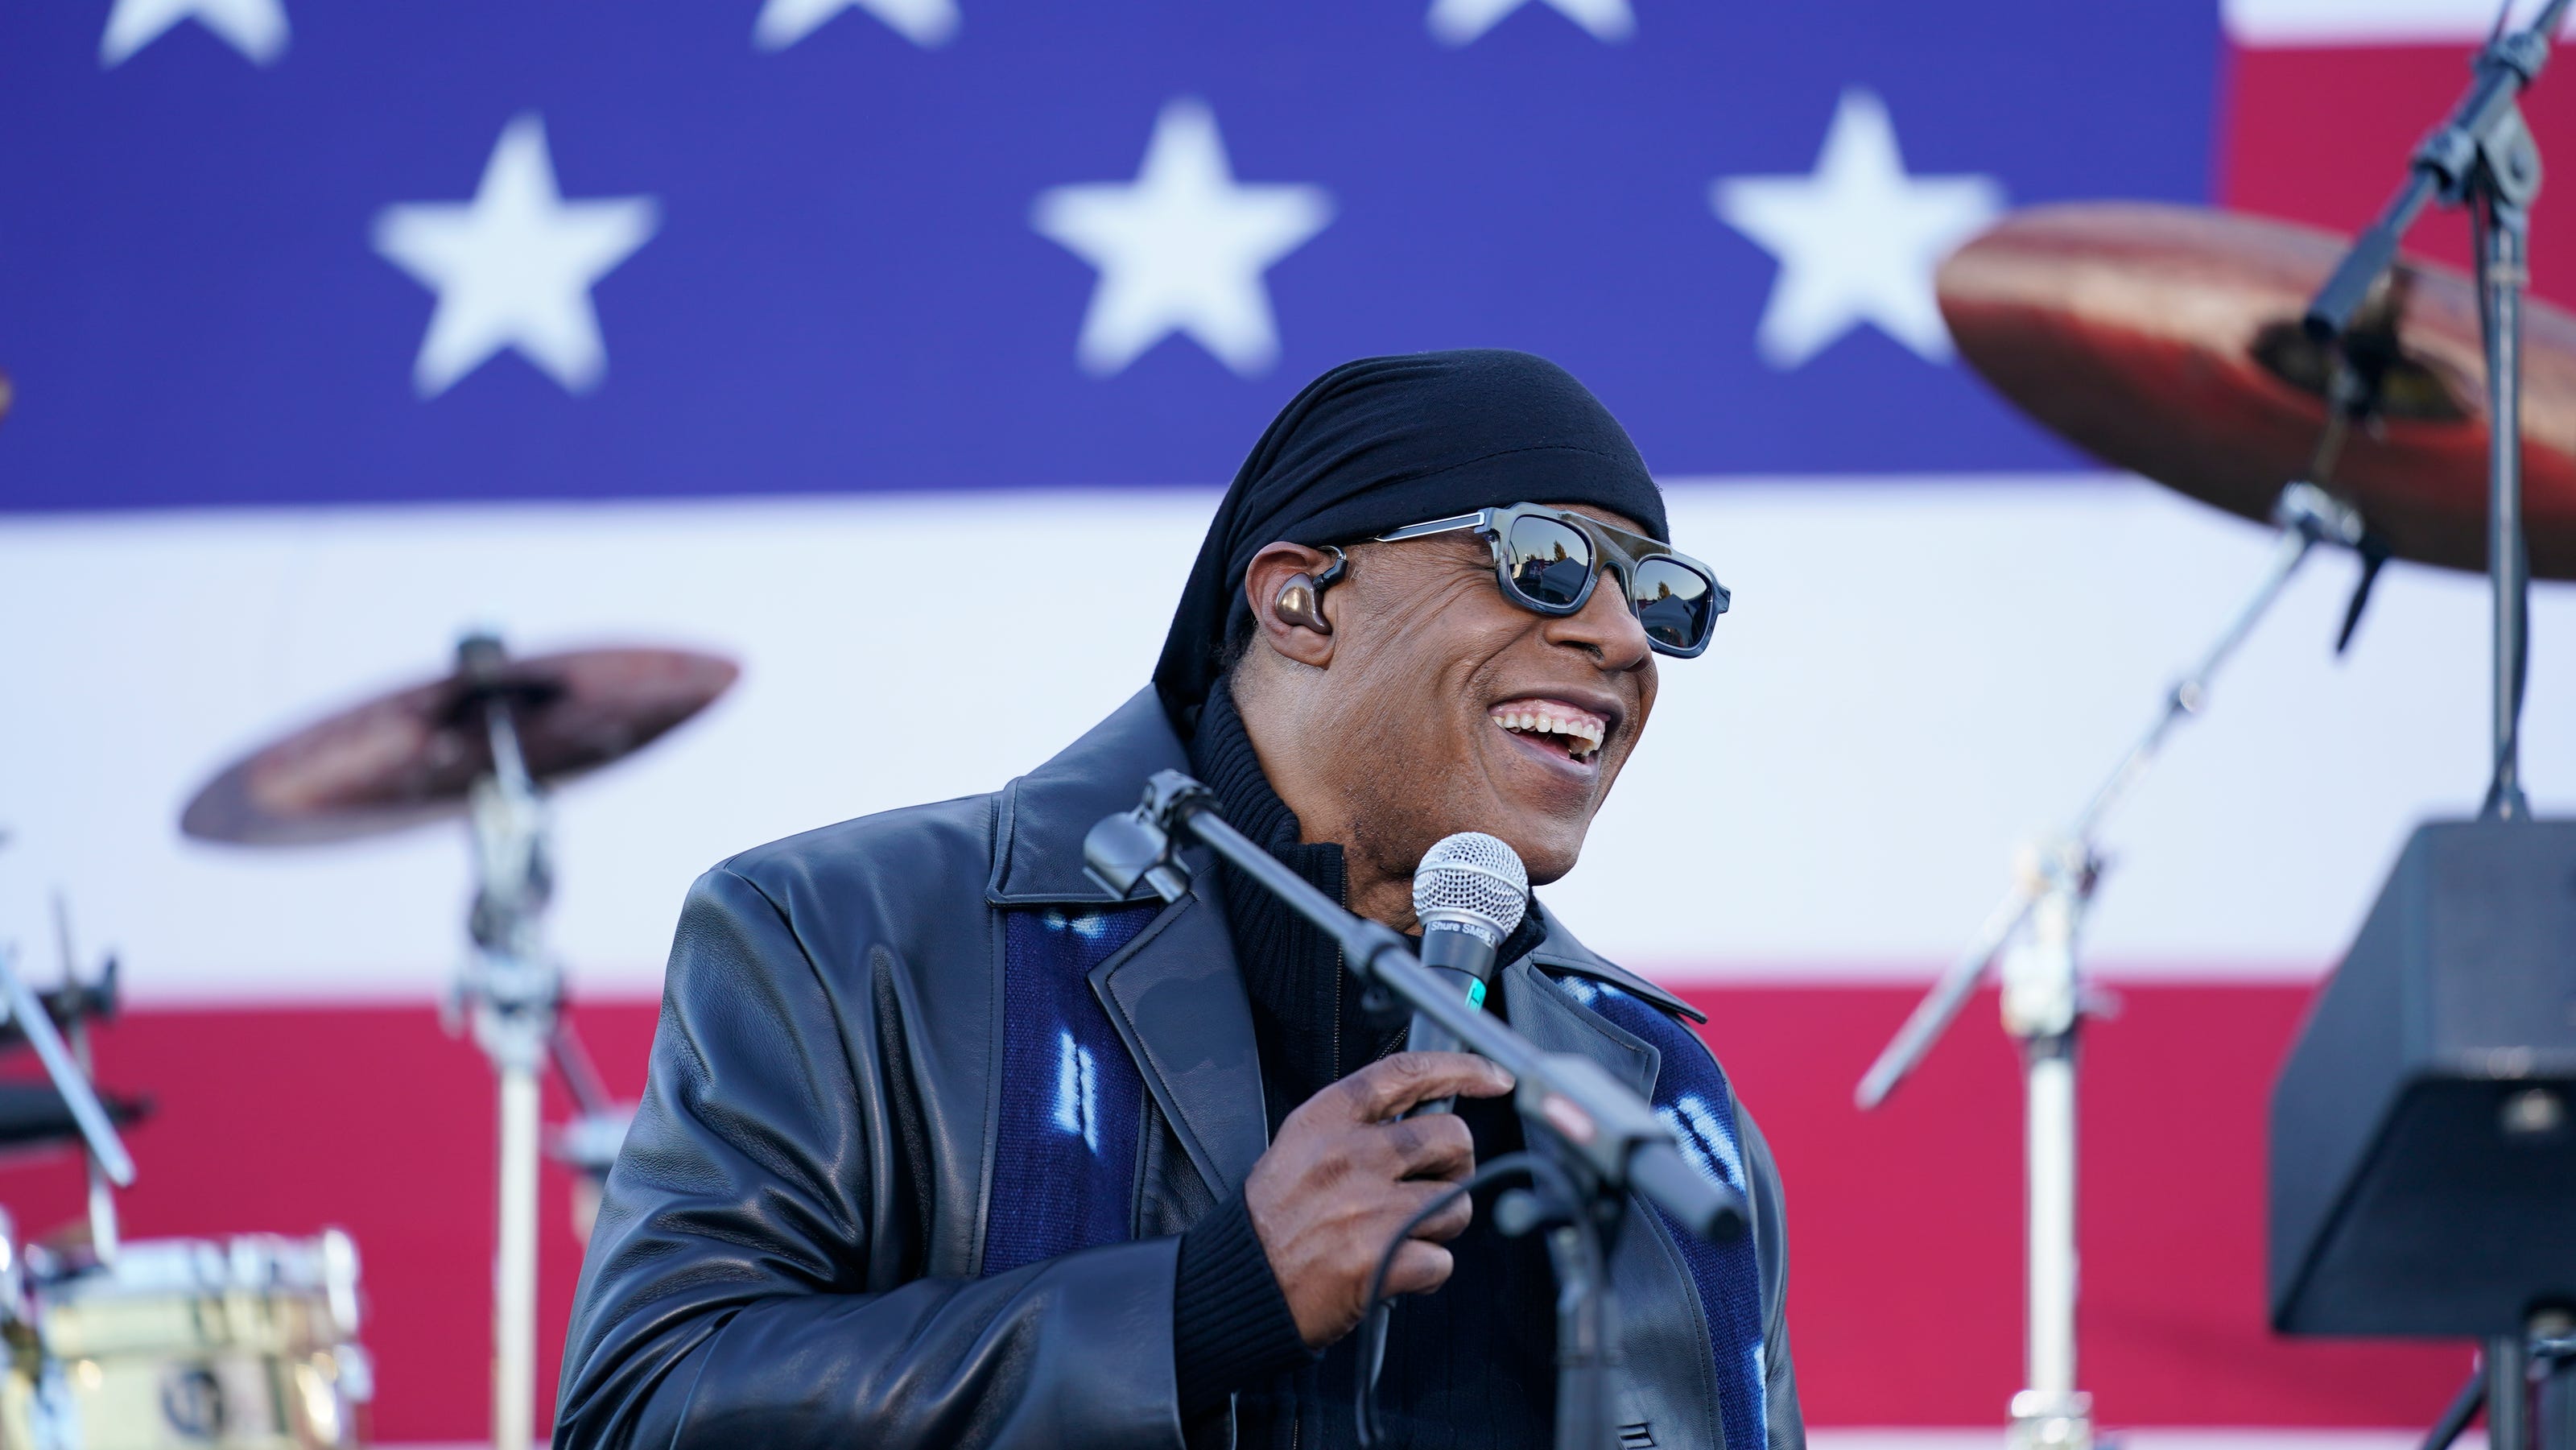 Joe Biden, Barack Obama, Stevie Wonder rally voters in Detroit - The Detroit News